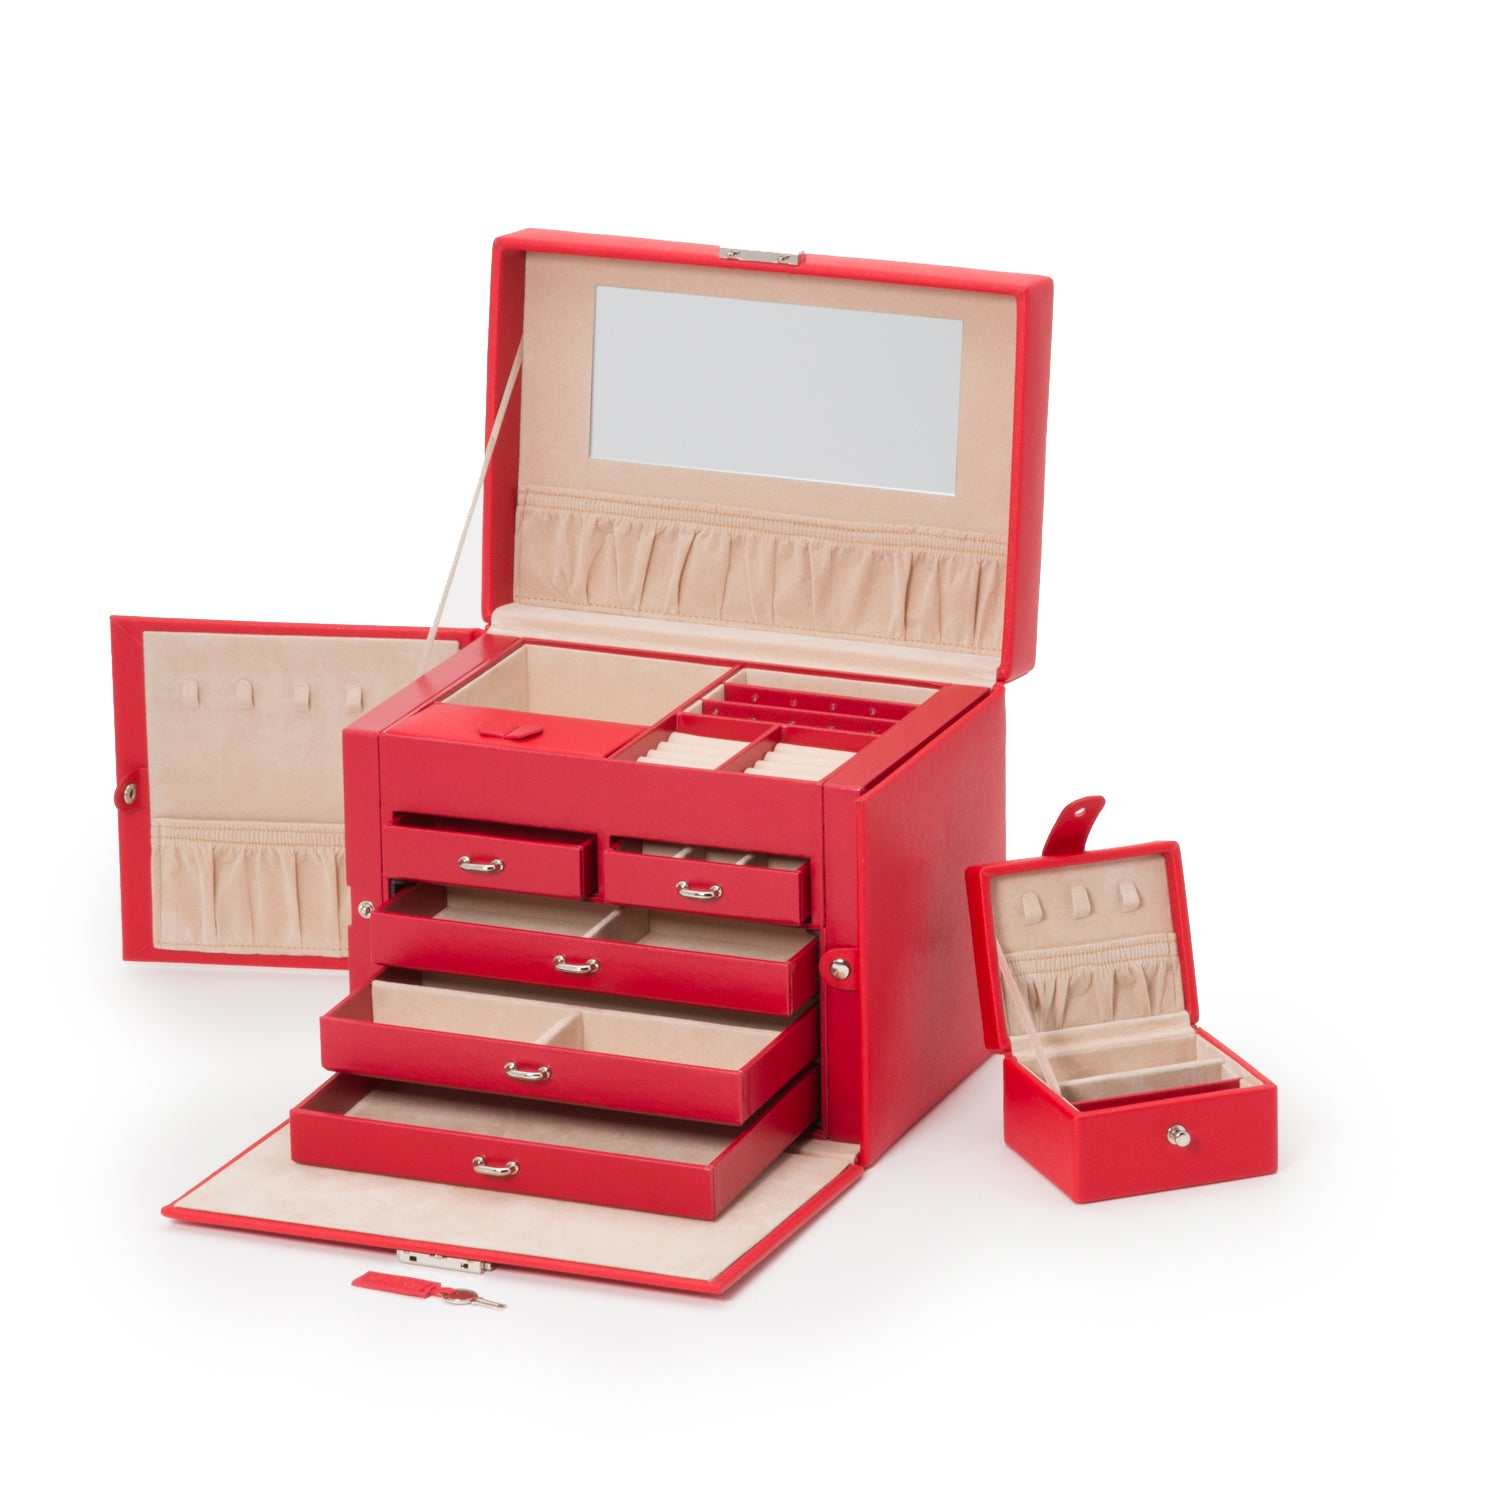 Watch Avenue UKJewellery BoxWolf Heritage Medium Jewellery Box Red Saffiano 280114Watch Avenue UK